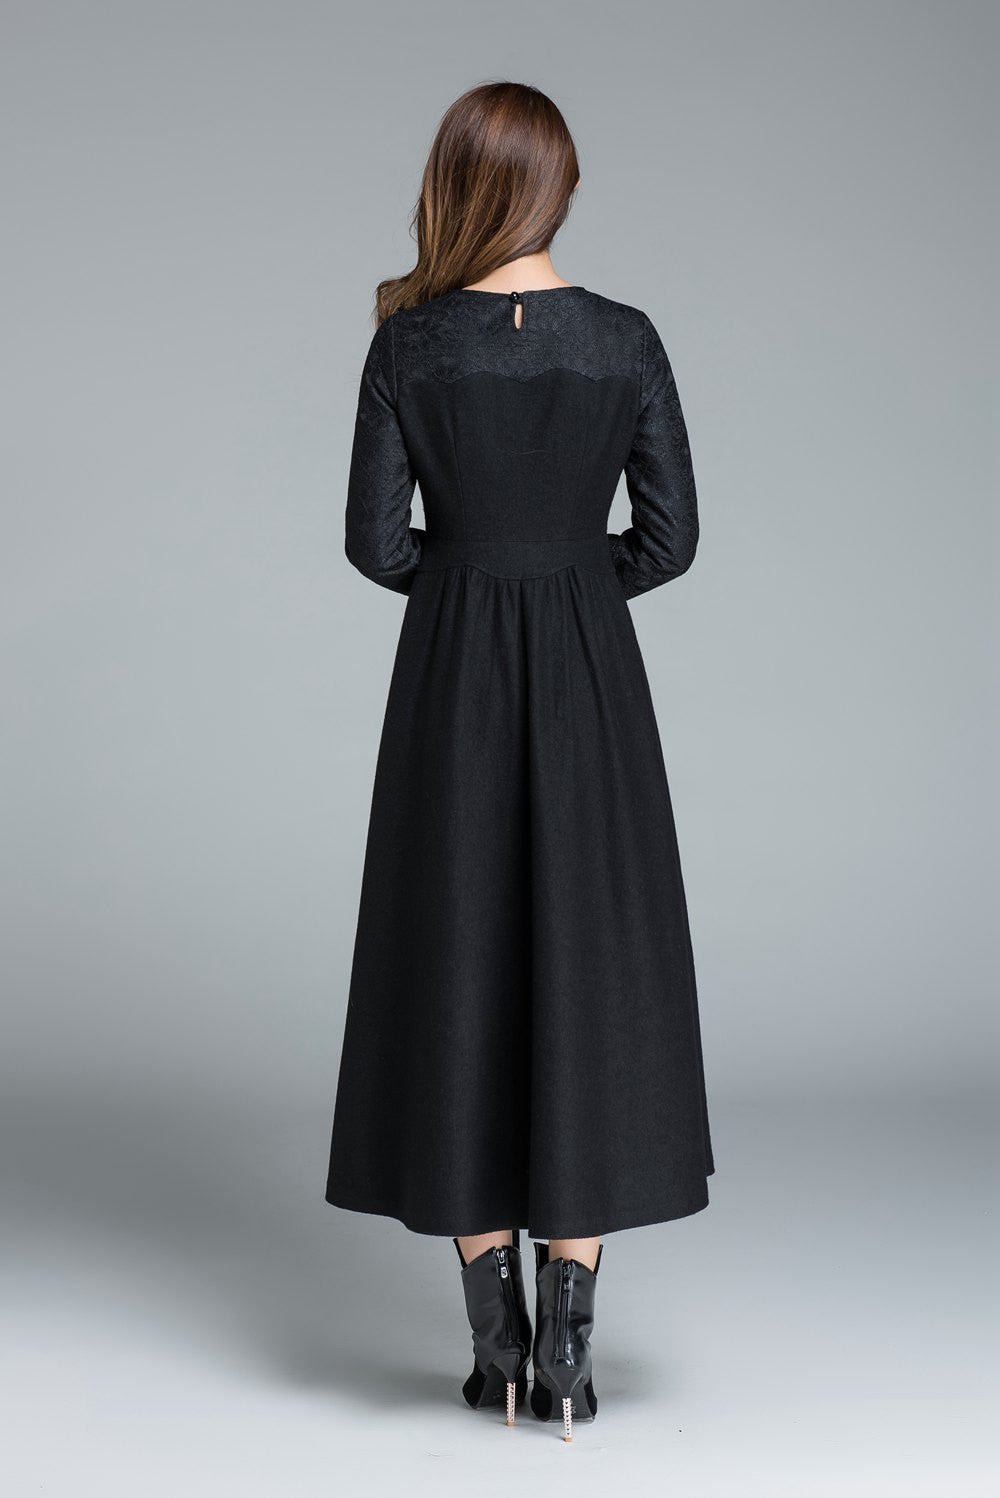 sweet heart wool dress, women long sleeve dress 1650